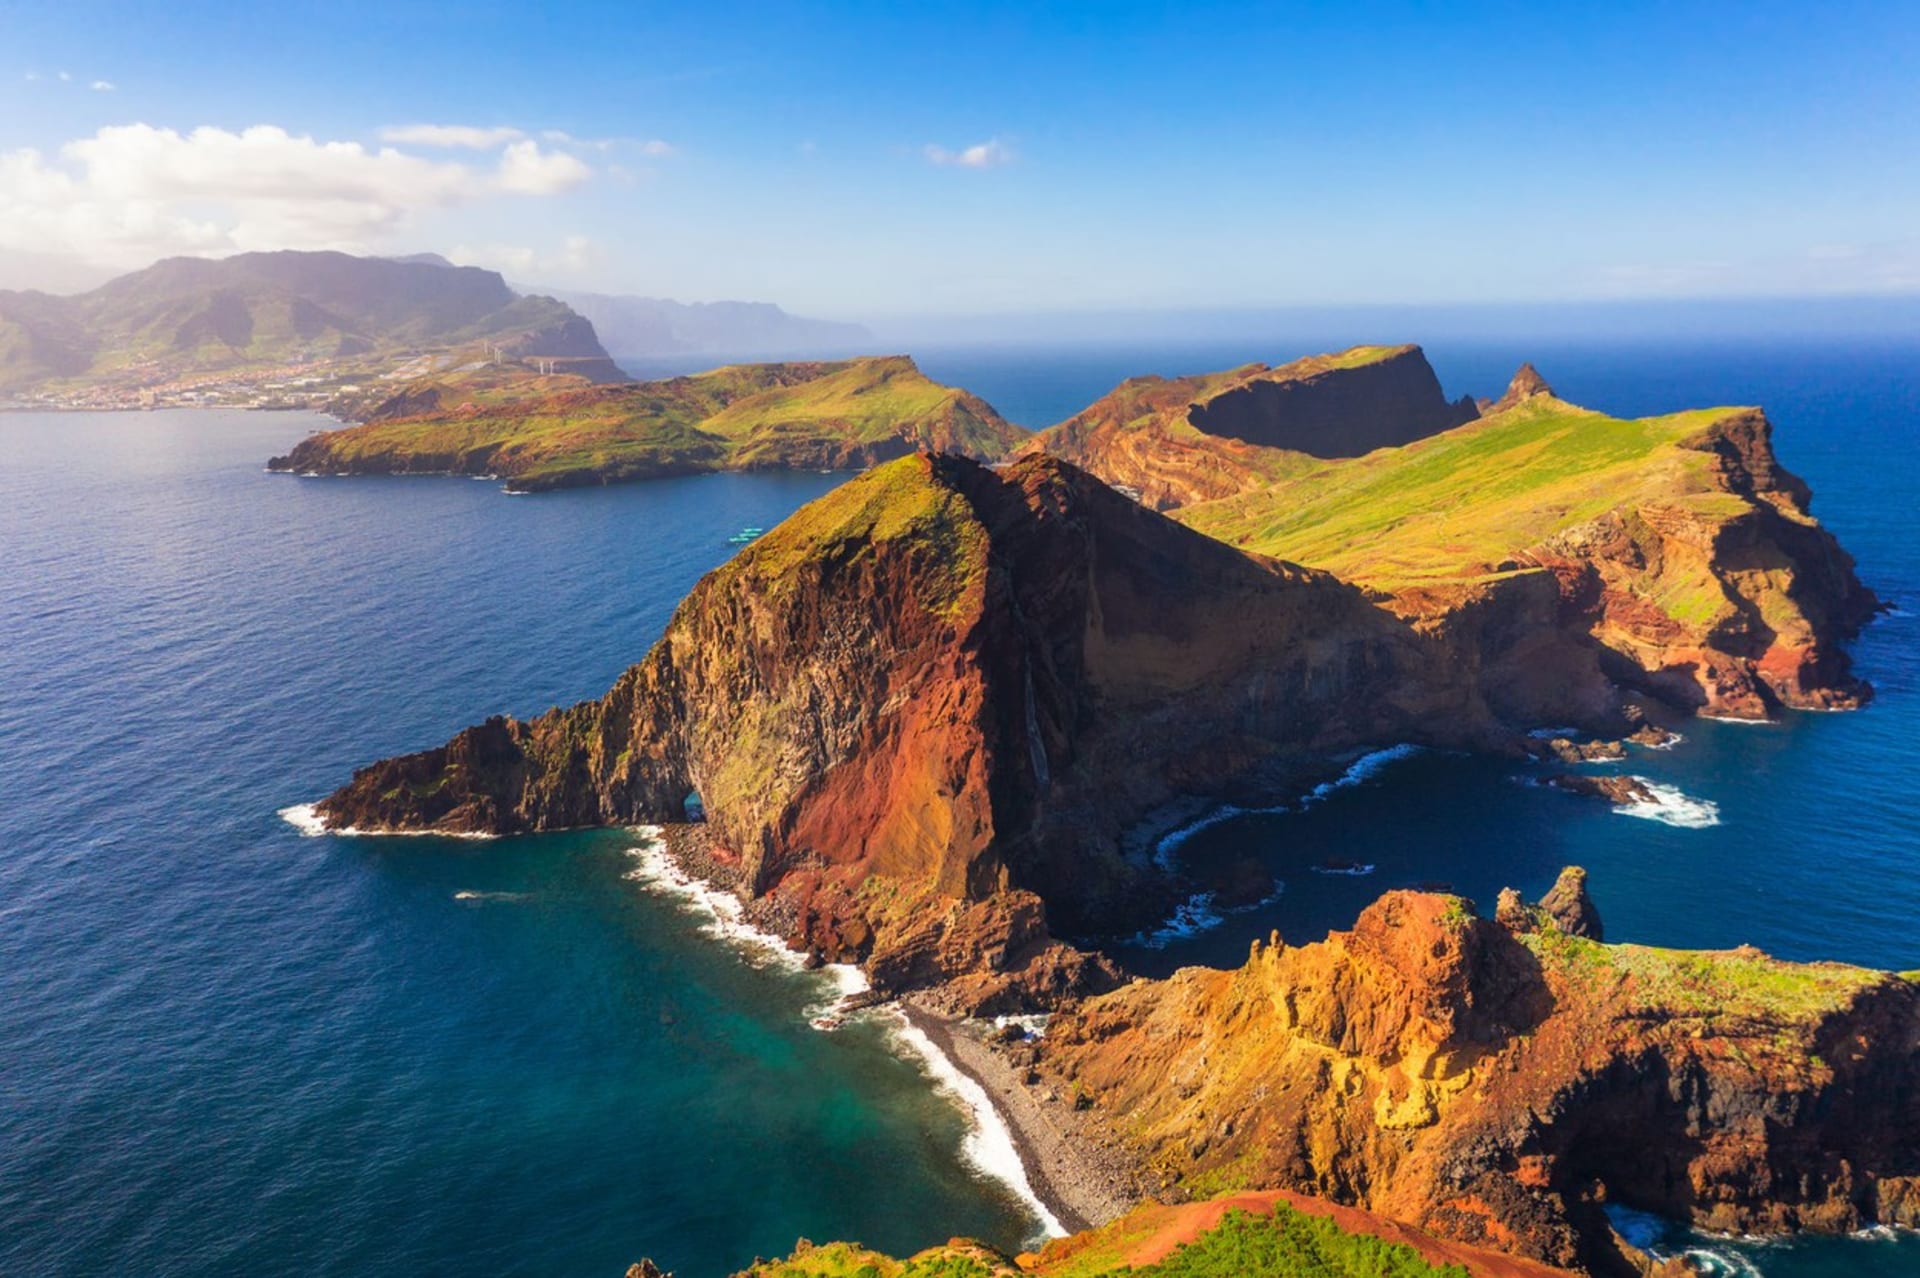 Madeiře se přezdívá ostrov věčného jara. I ona se letos stala Čechy vyhledávanou destinací pro letní dovolenou. 